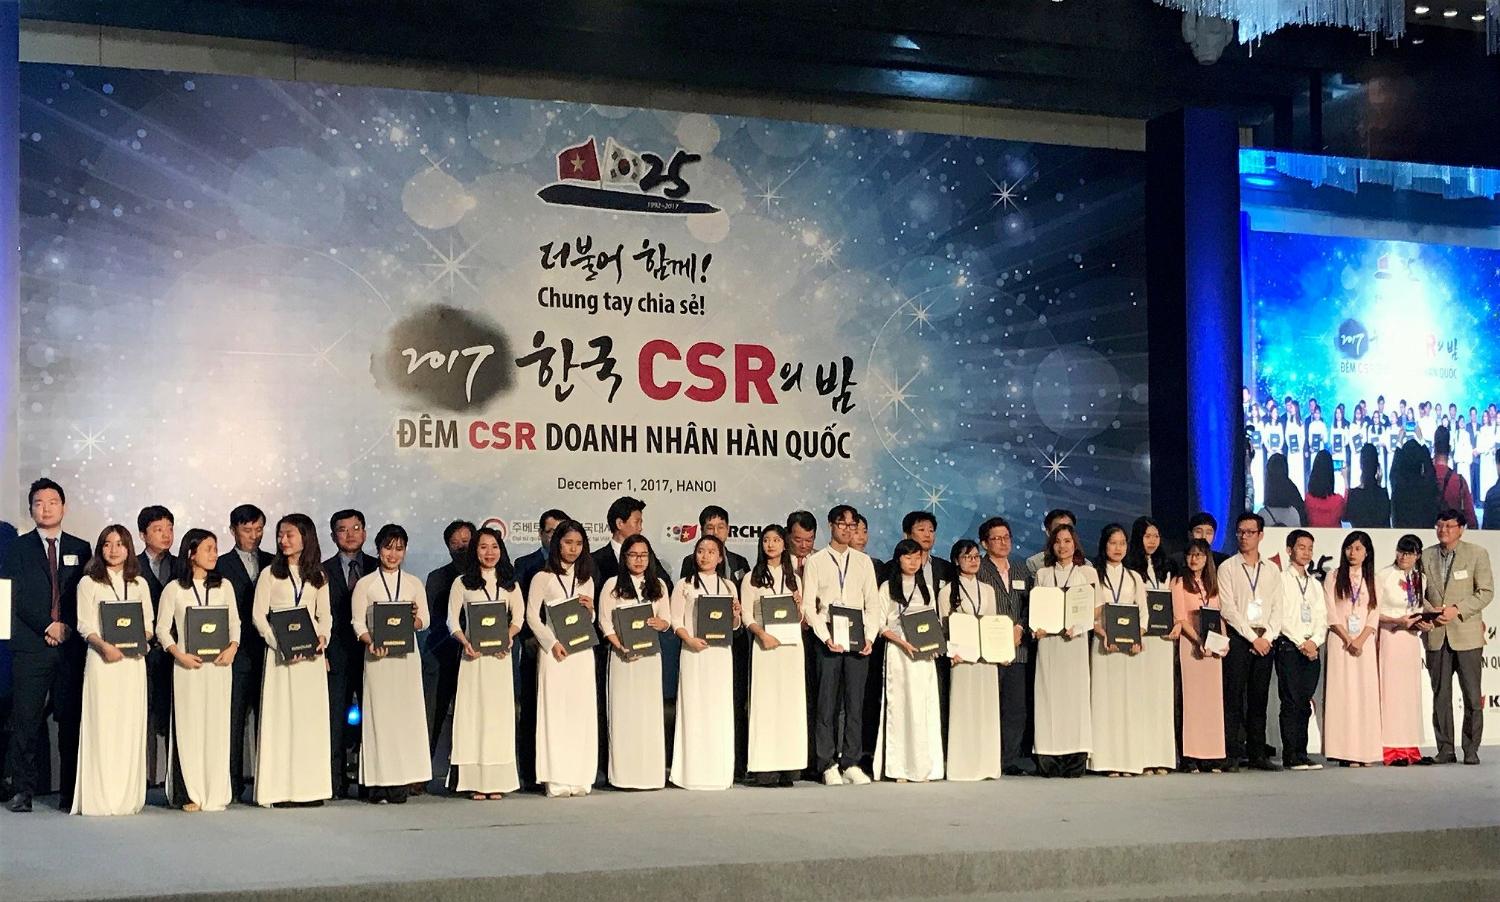 Đêm CSR Doanh nhân Hàn Quốc 2017- Trao học bổng cho 114 sinh viên